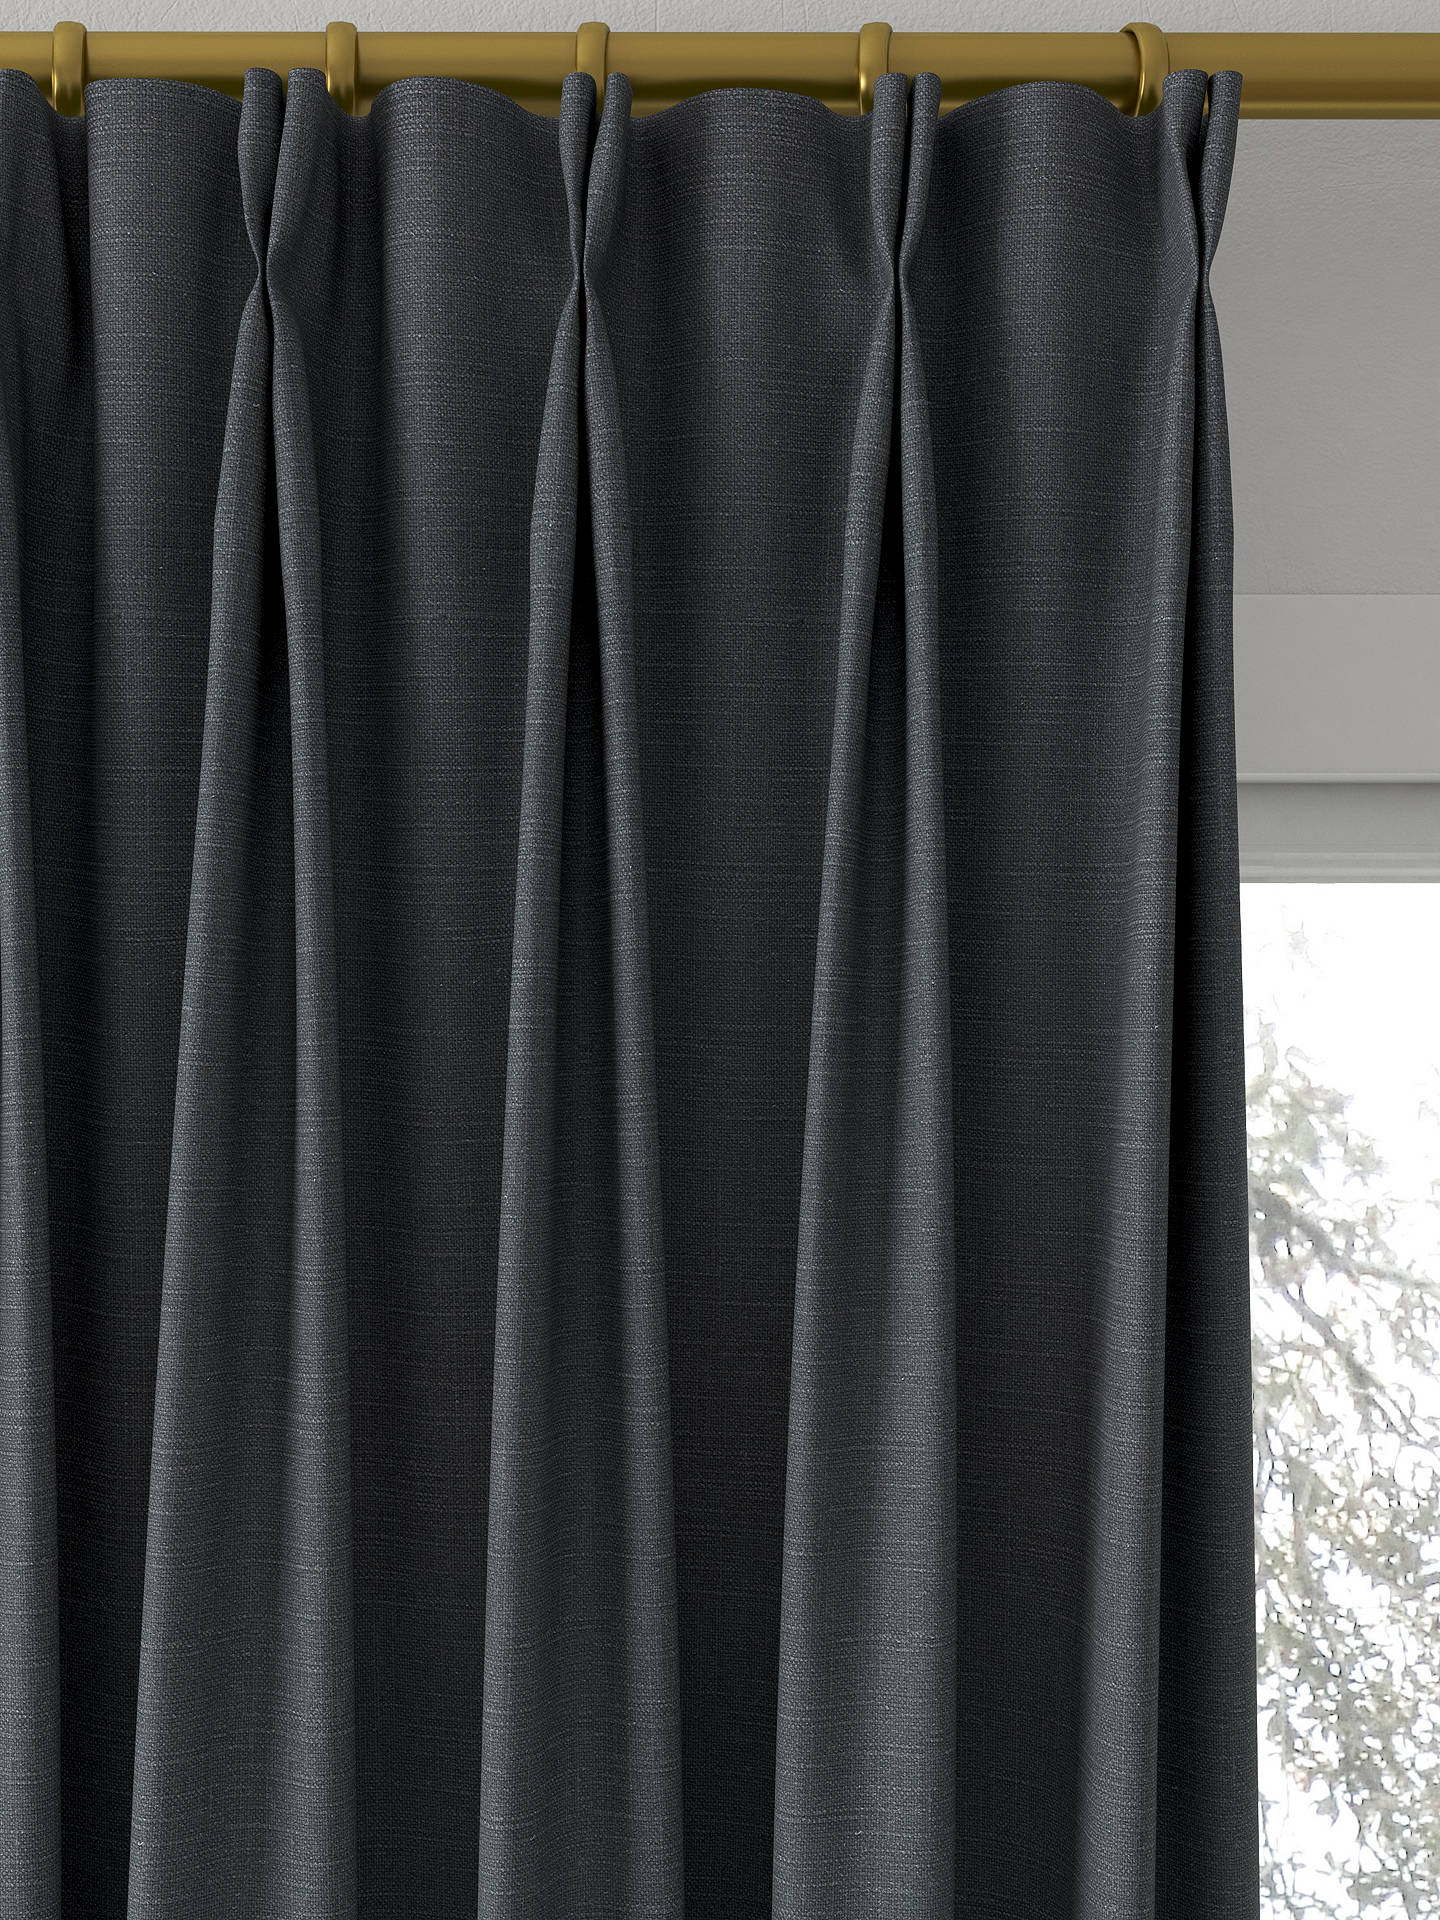 Sanderson Tuscany II Made to Measure Curtains, Slate